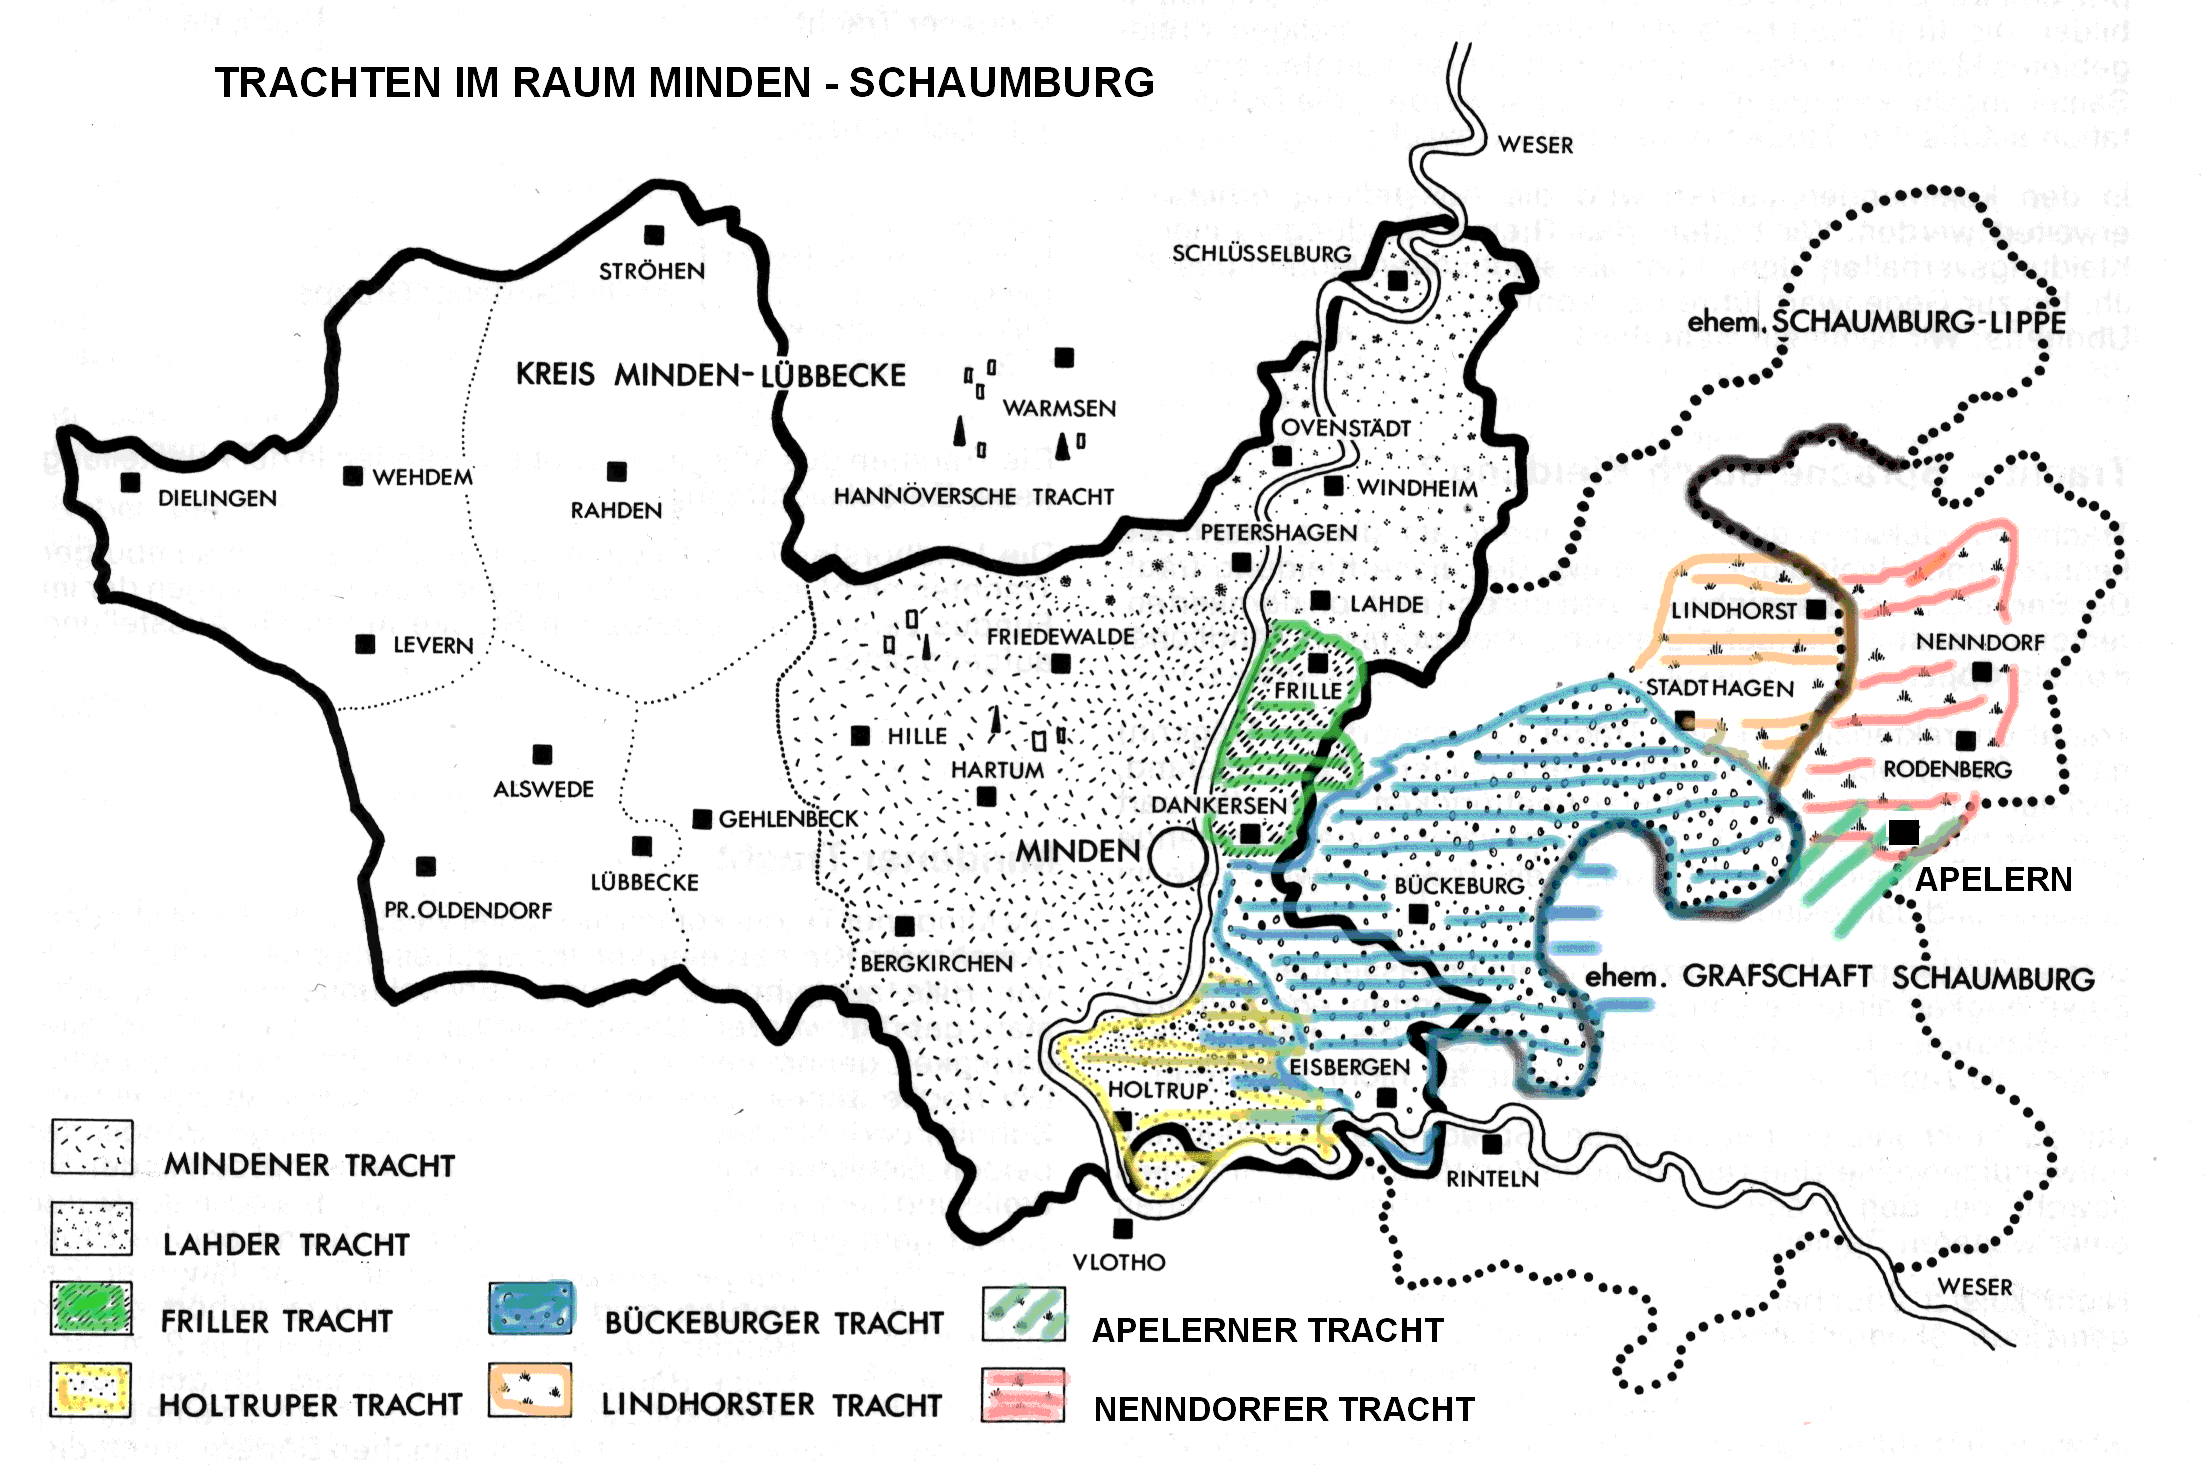 Trachtenregion Schaumburg - Minden